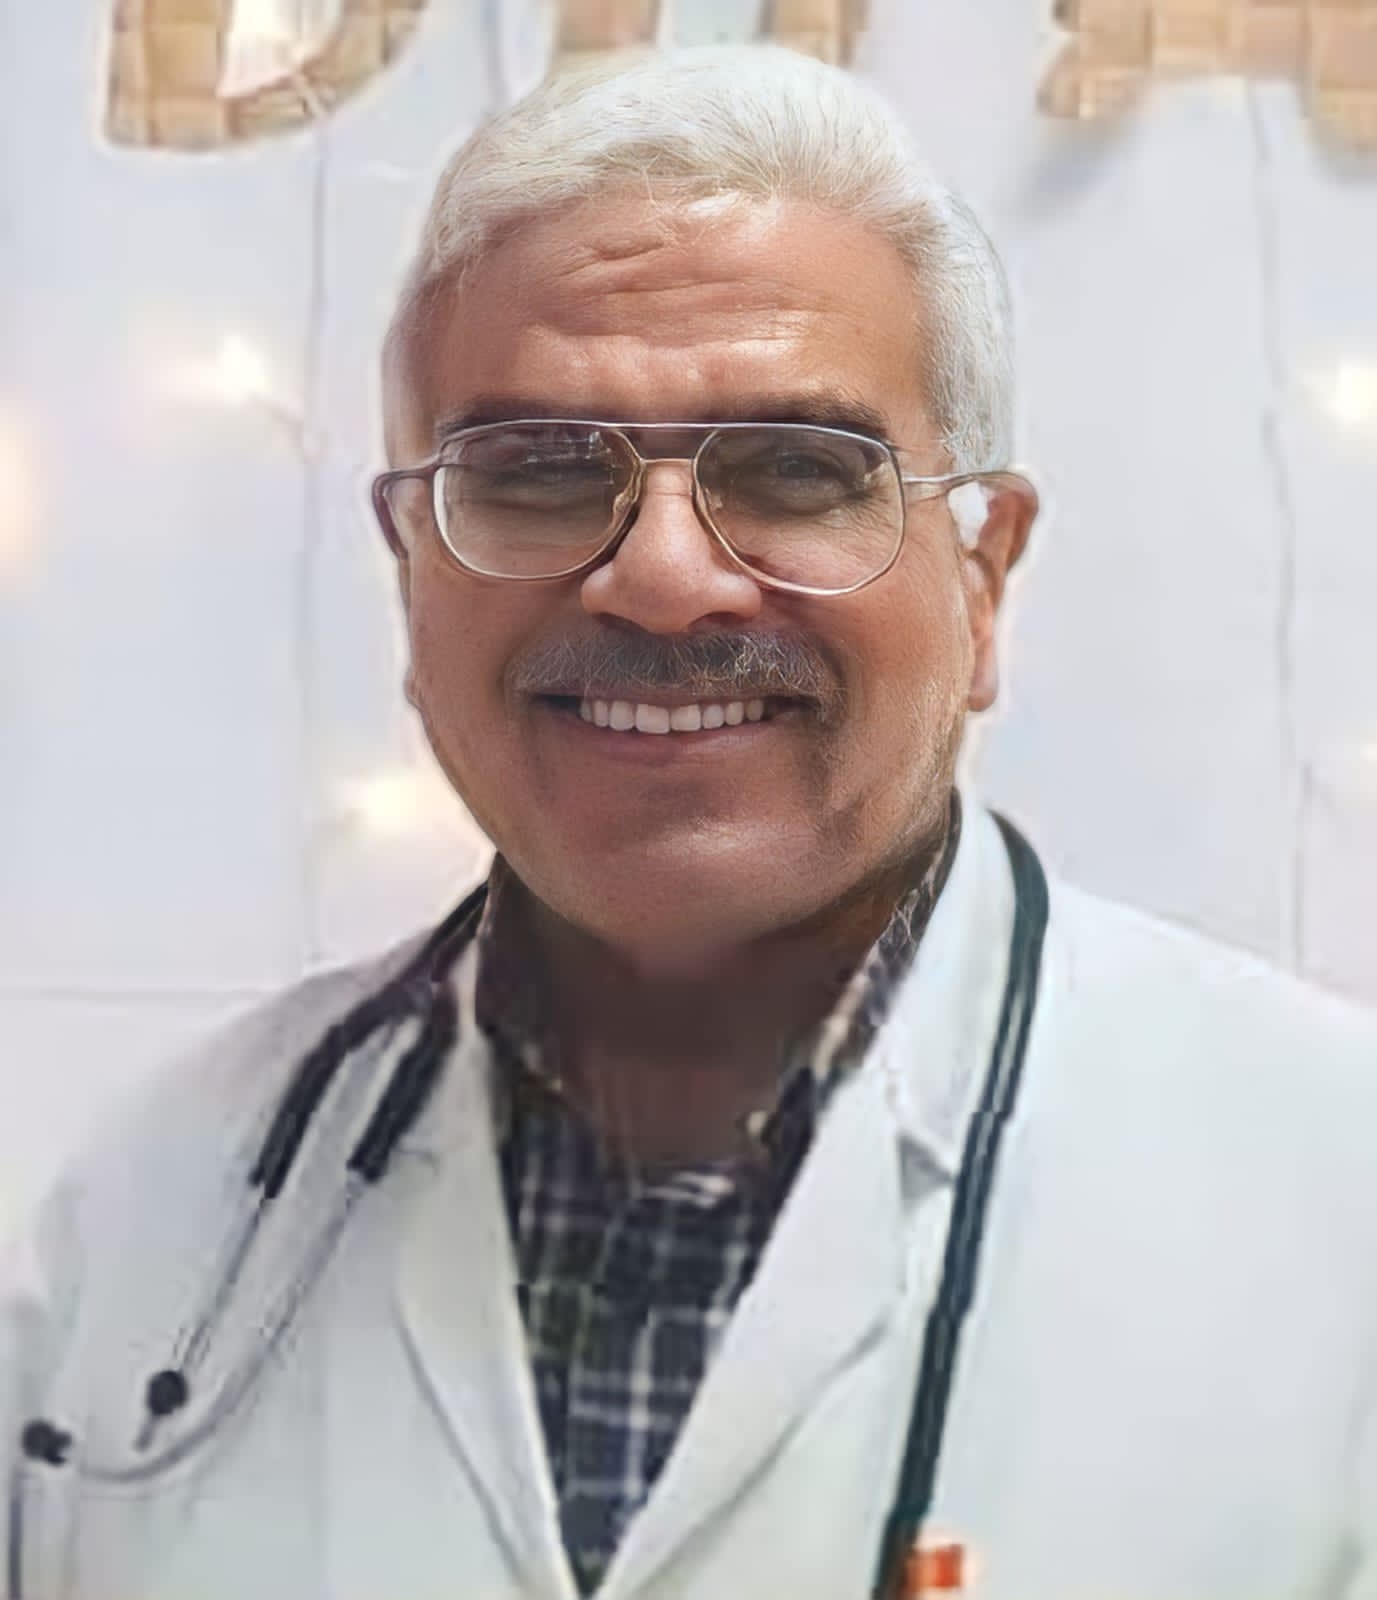 دكتور كمال محمد عبد النبي